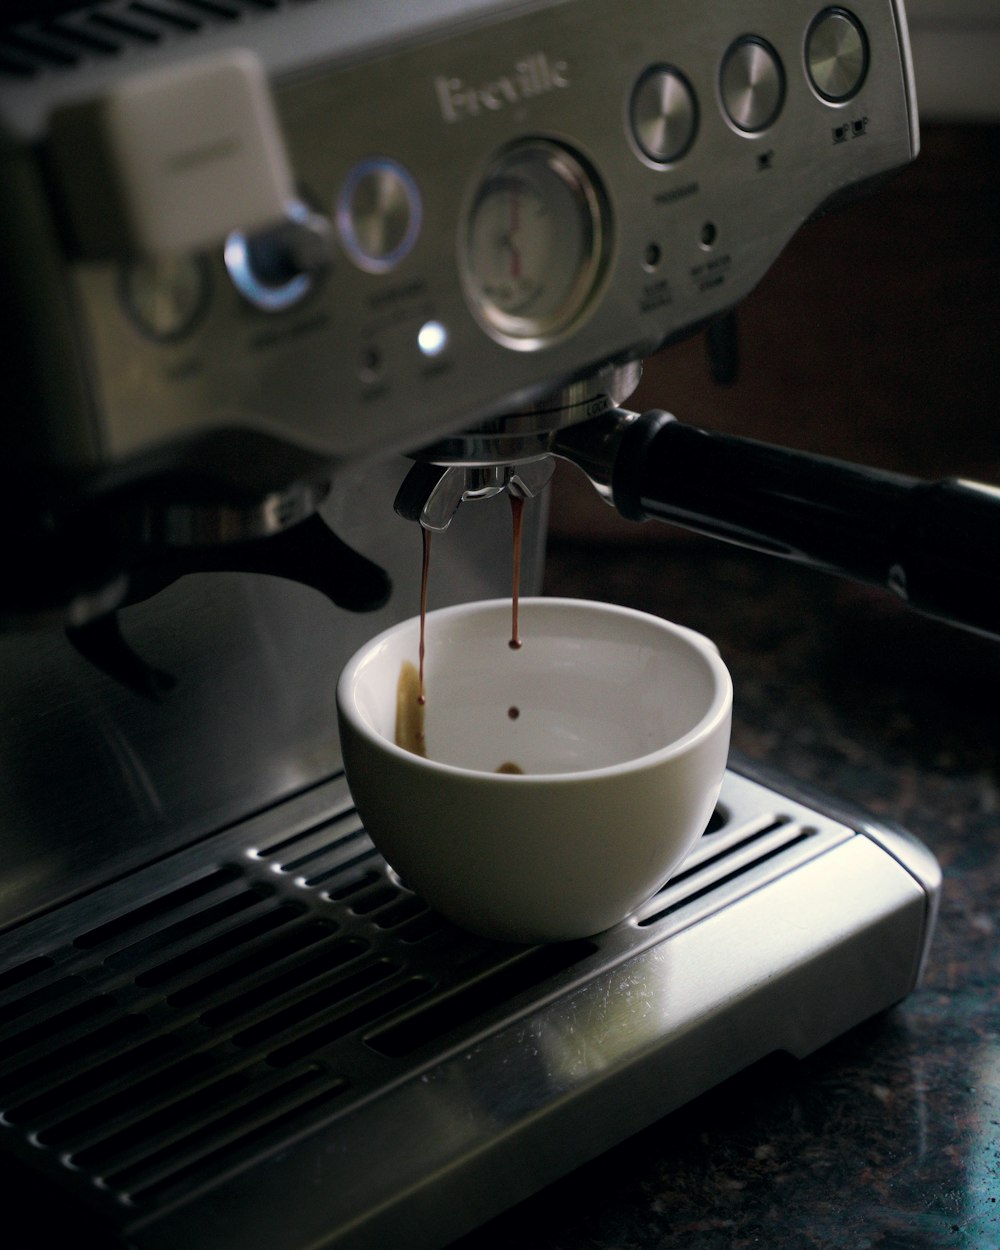 Taza de cerámica blanca en máquina de café espresso negra y plateada